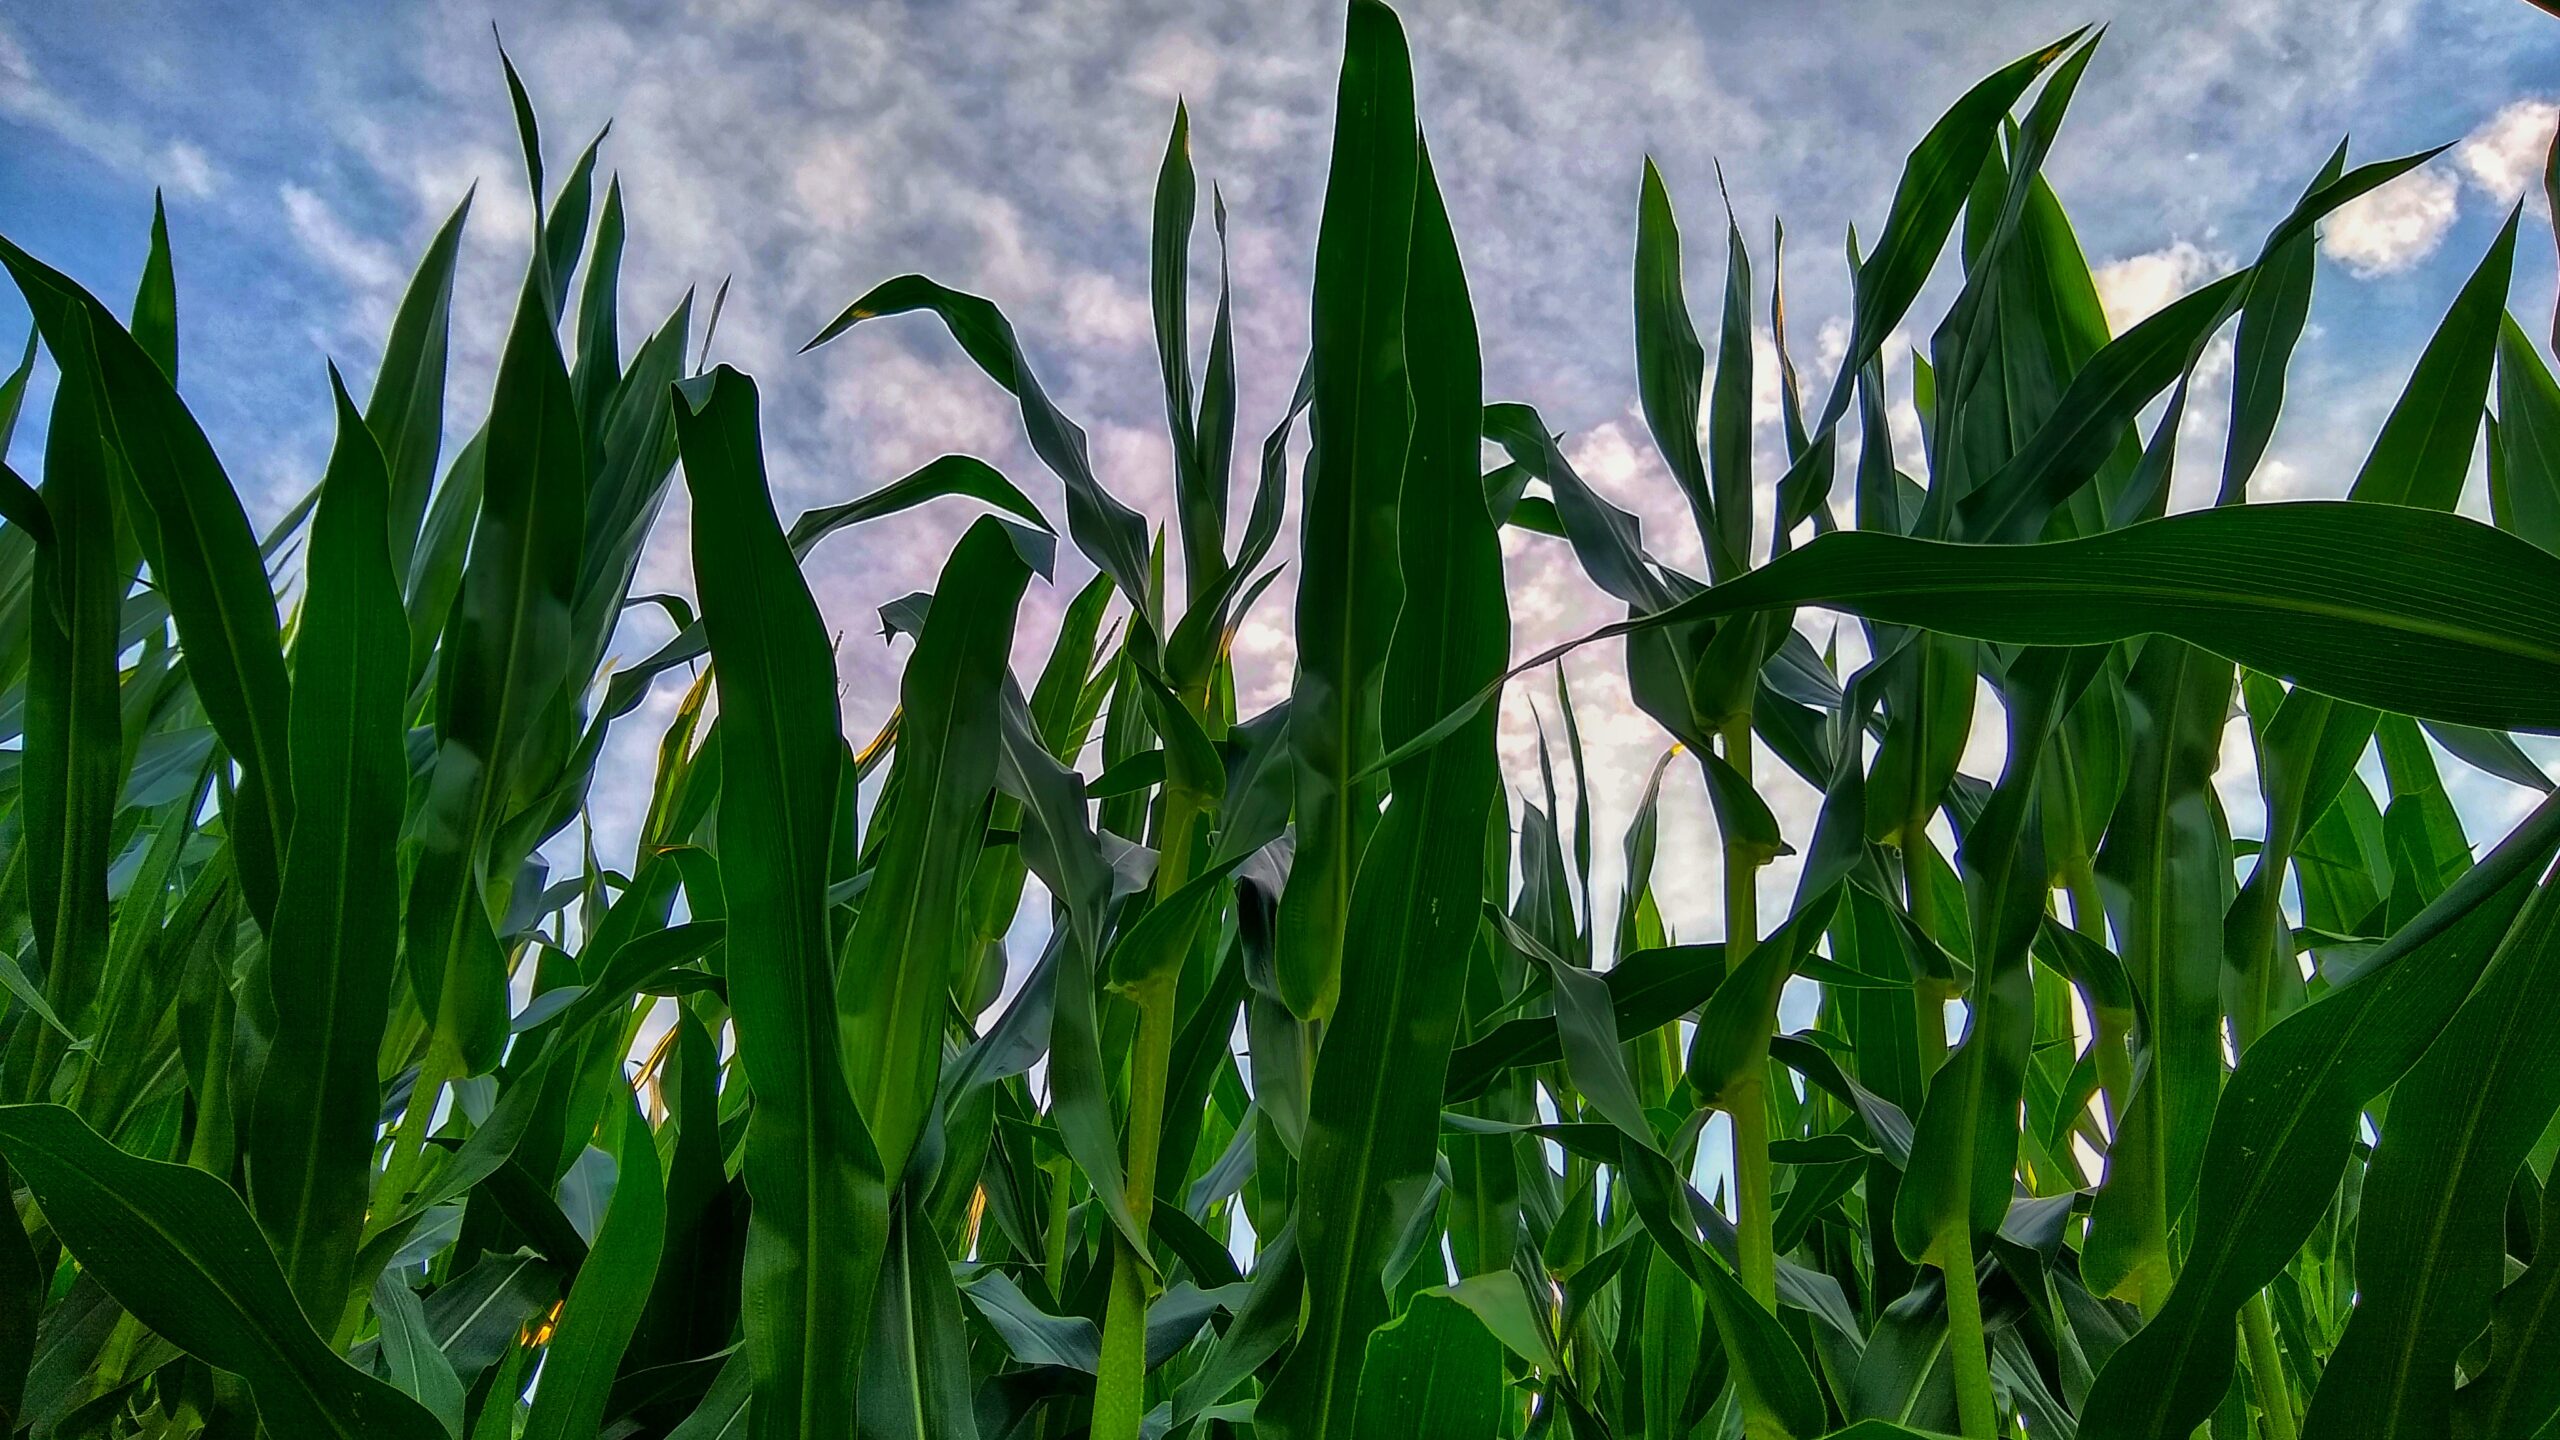 Corn against cloudy sky